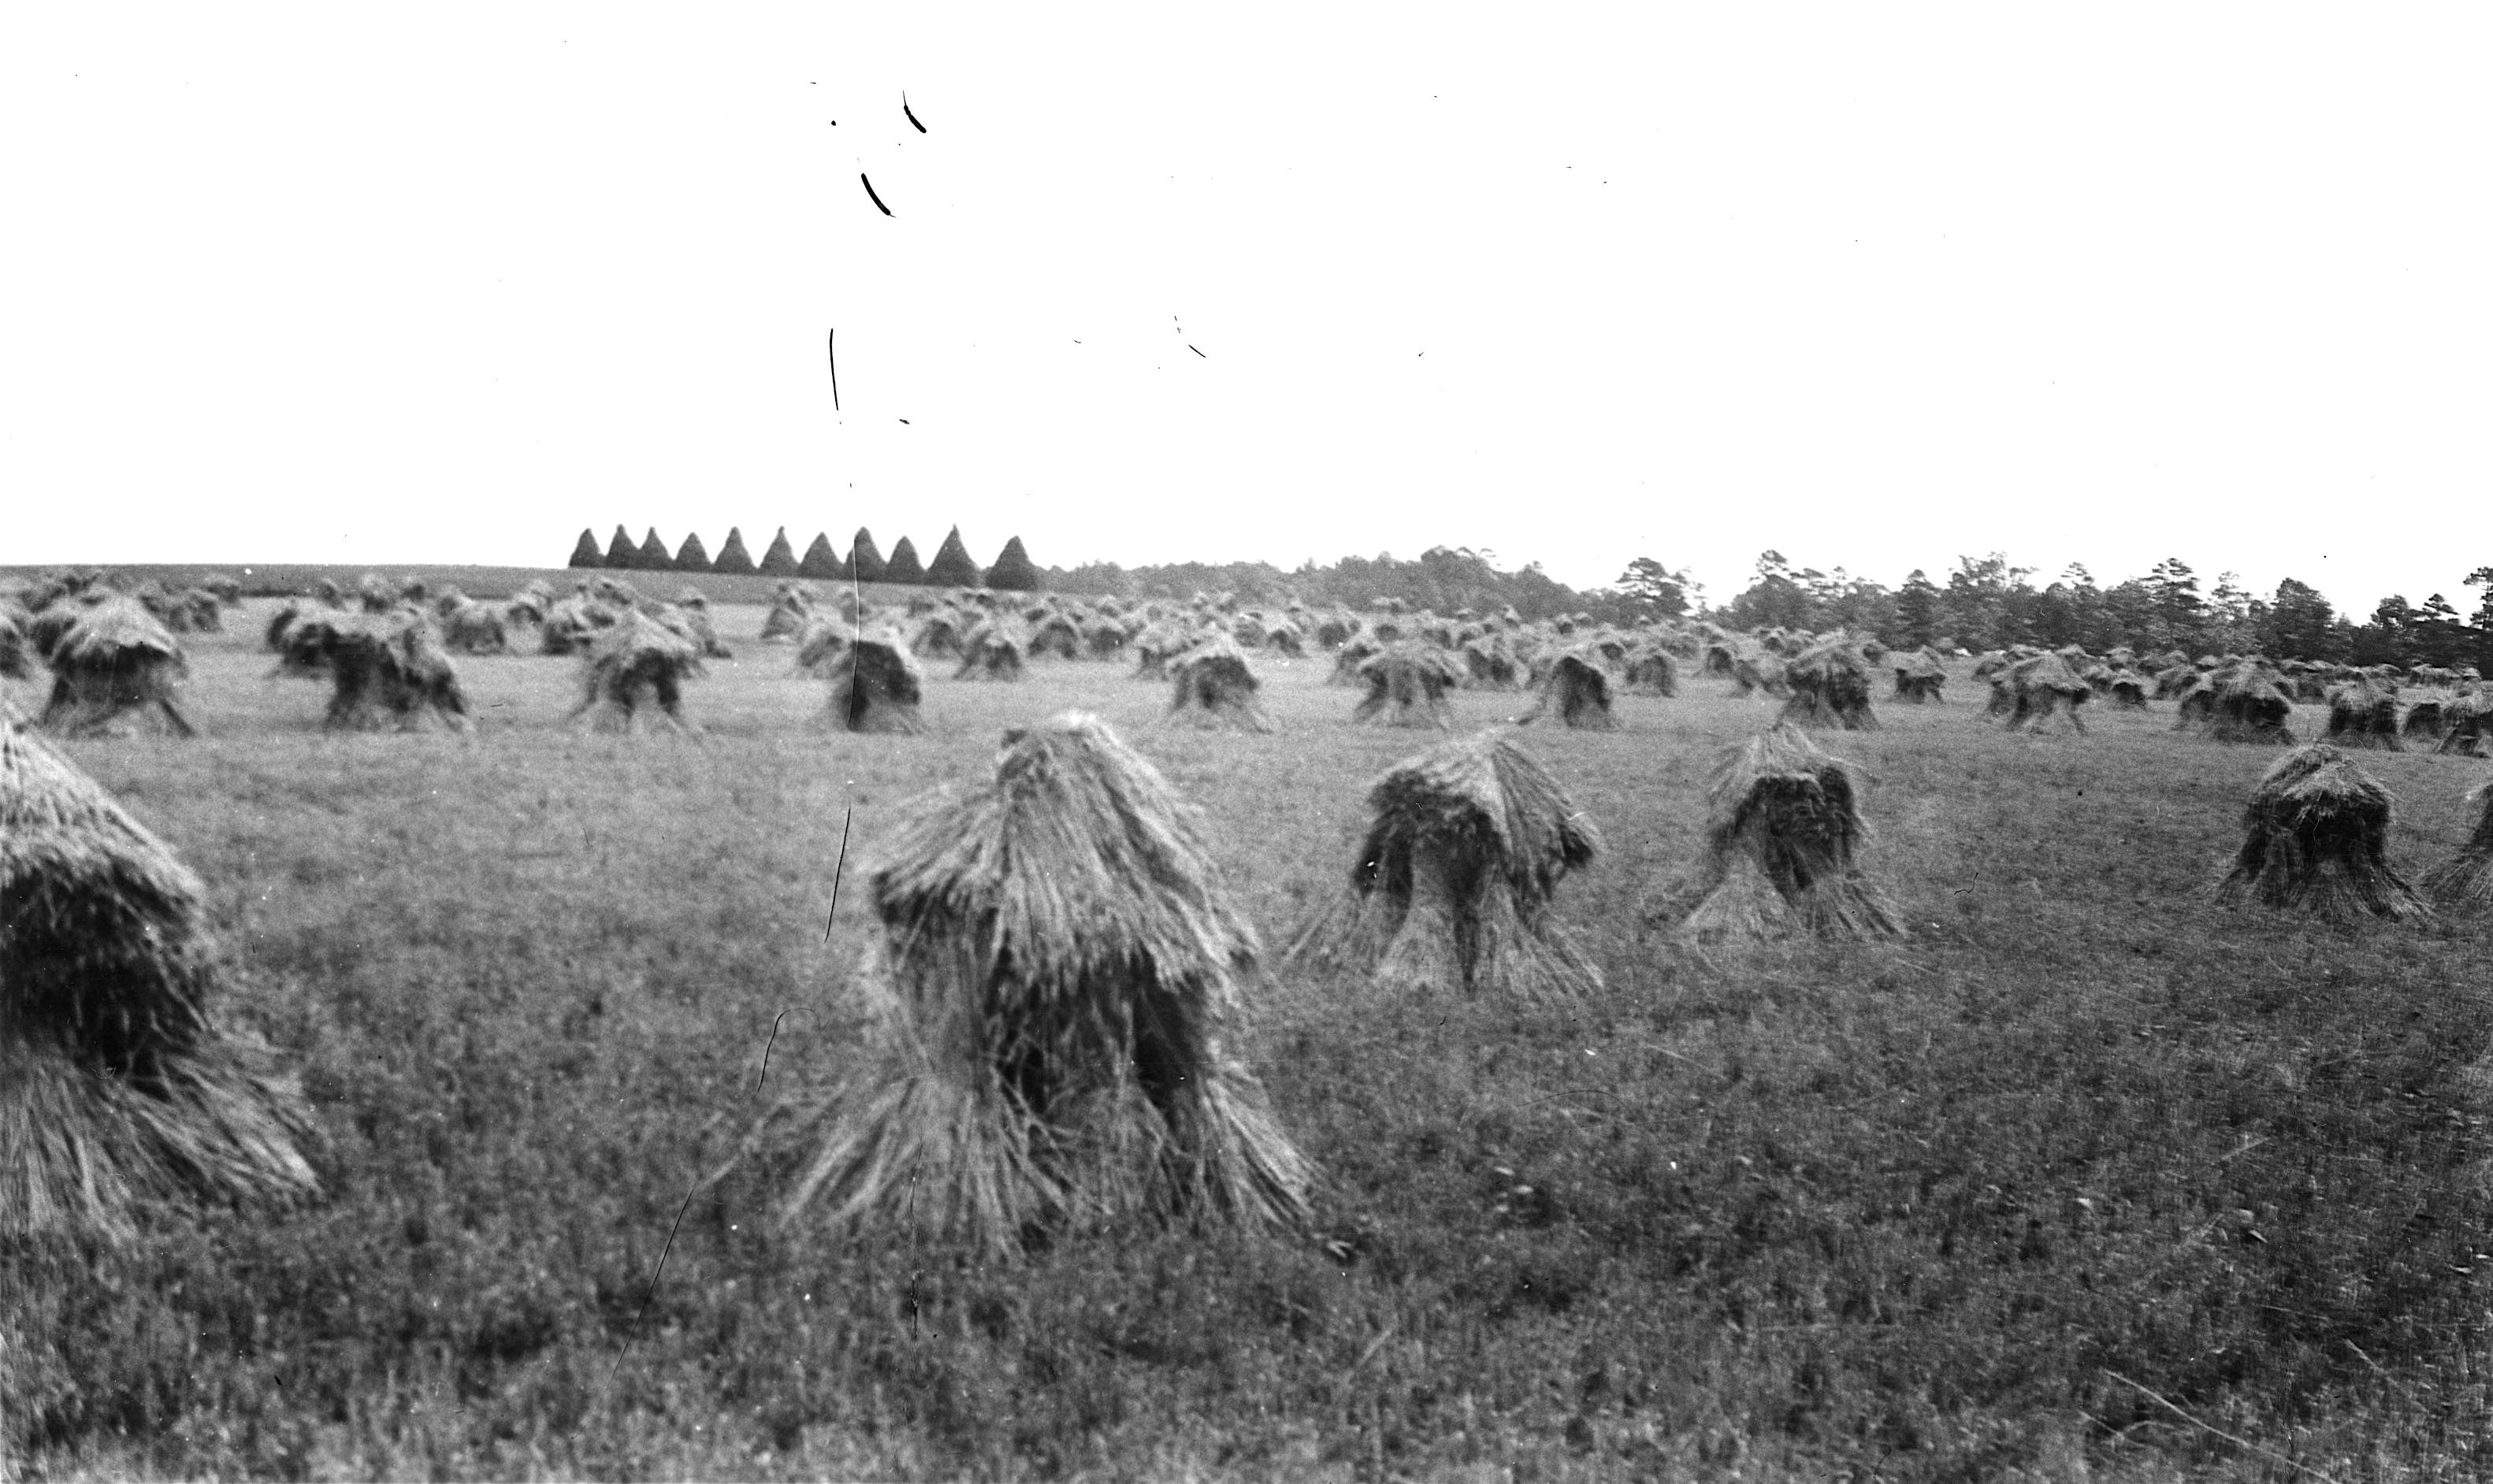 Carpenter Farm in North Carolina grew purple straw, as shown in this 1923 picture. 